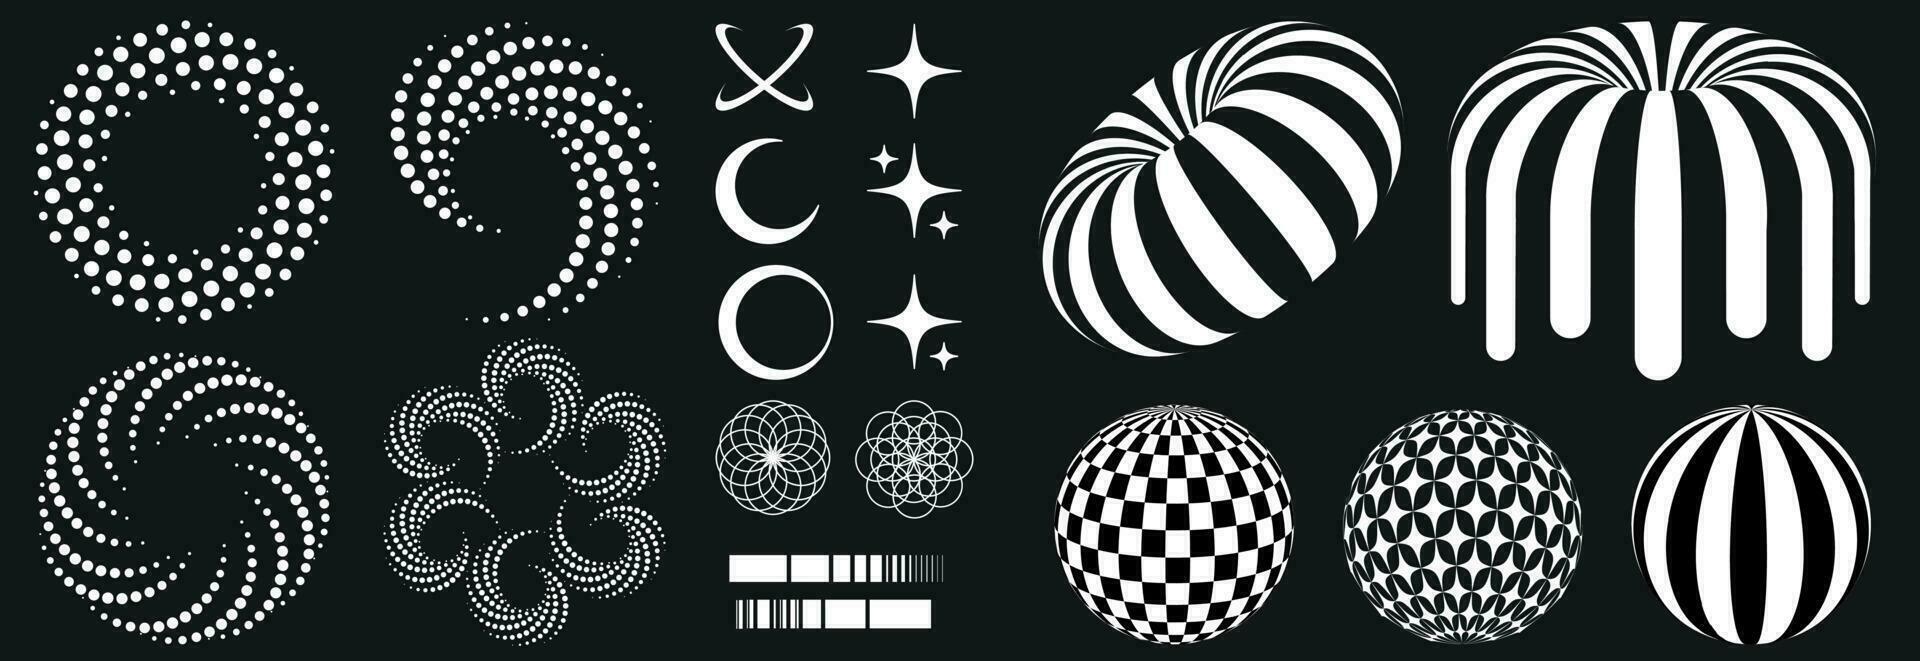 reeks in retro psychedelisch stijl van de jaren 2000 met elementen en meetkundig vormen patronen, zebra donut. surrealistische cirkels, sterren, ballen. vector